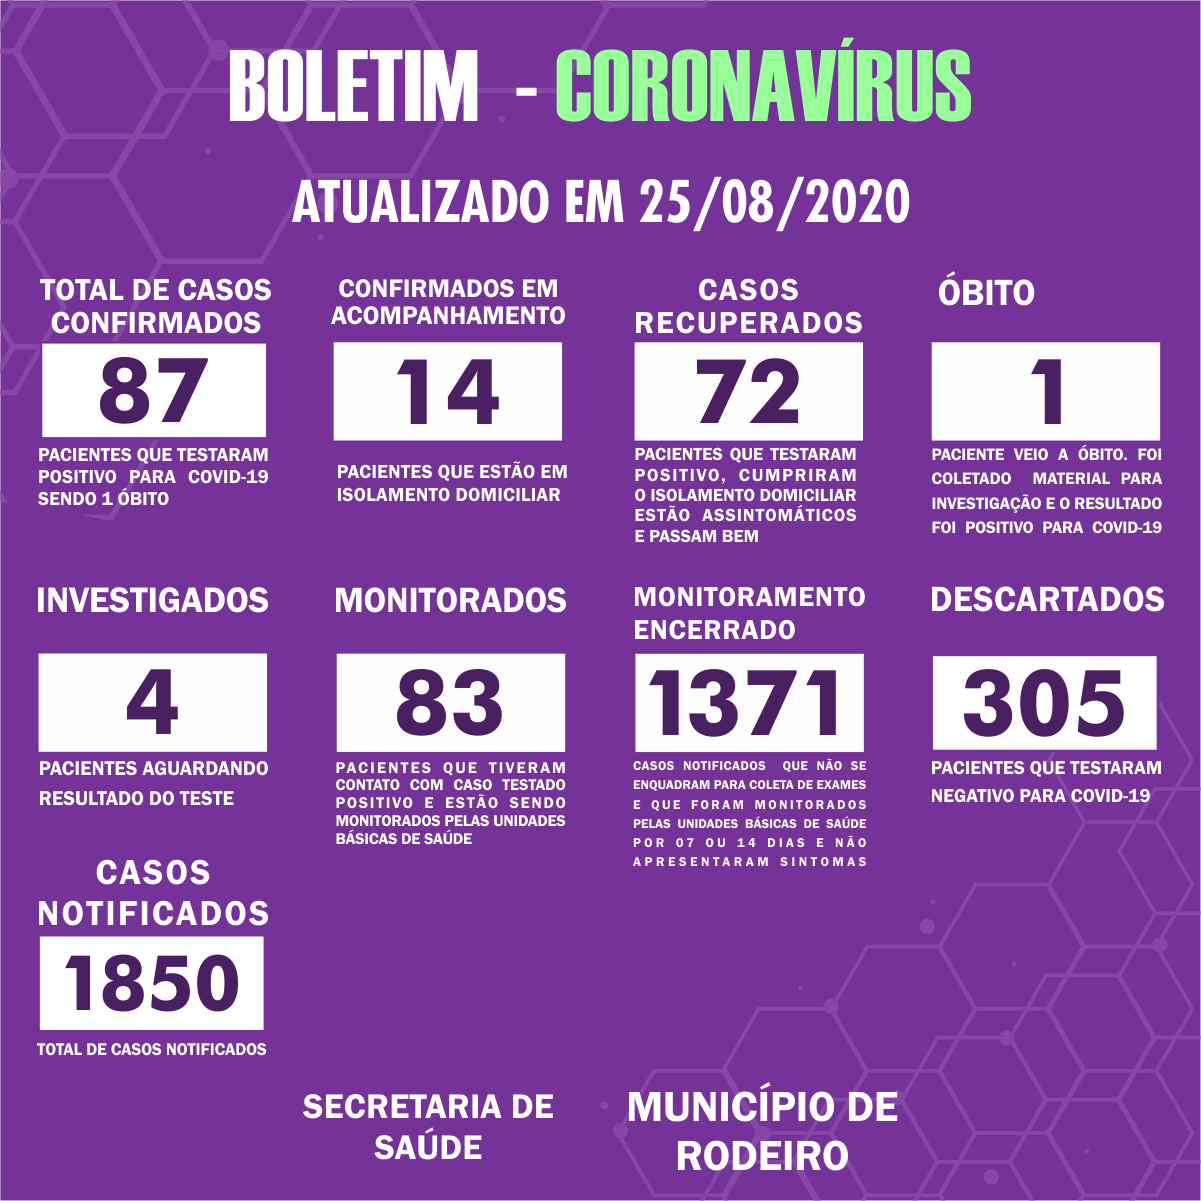 Boletim Epidemiológico do Município de Rodeiro sobre coronavírus, atualizado em 25/08/2020